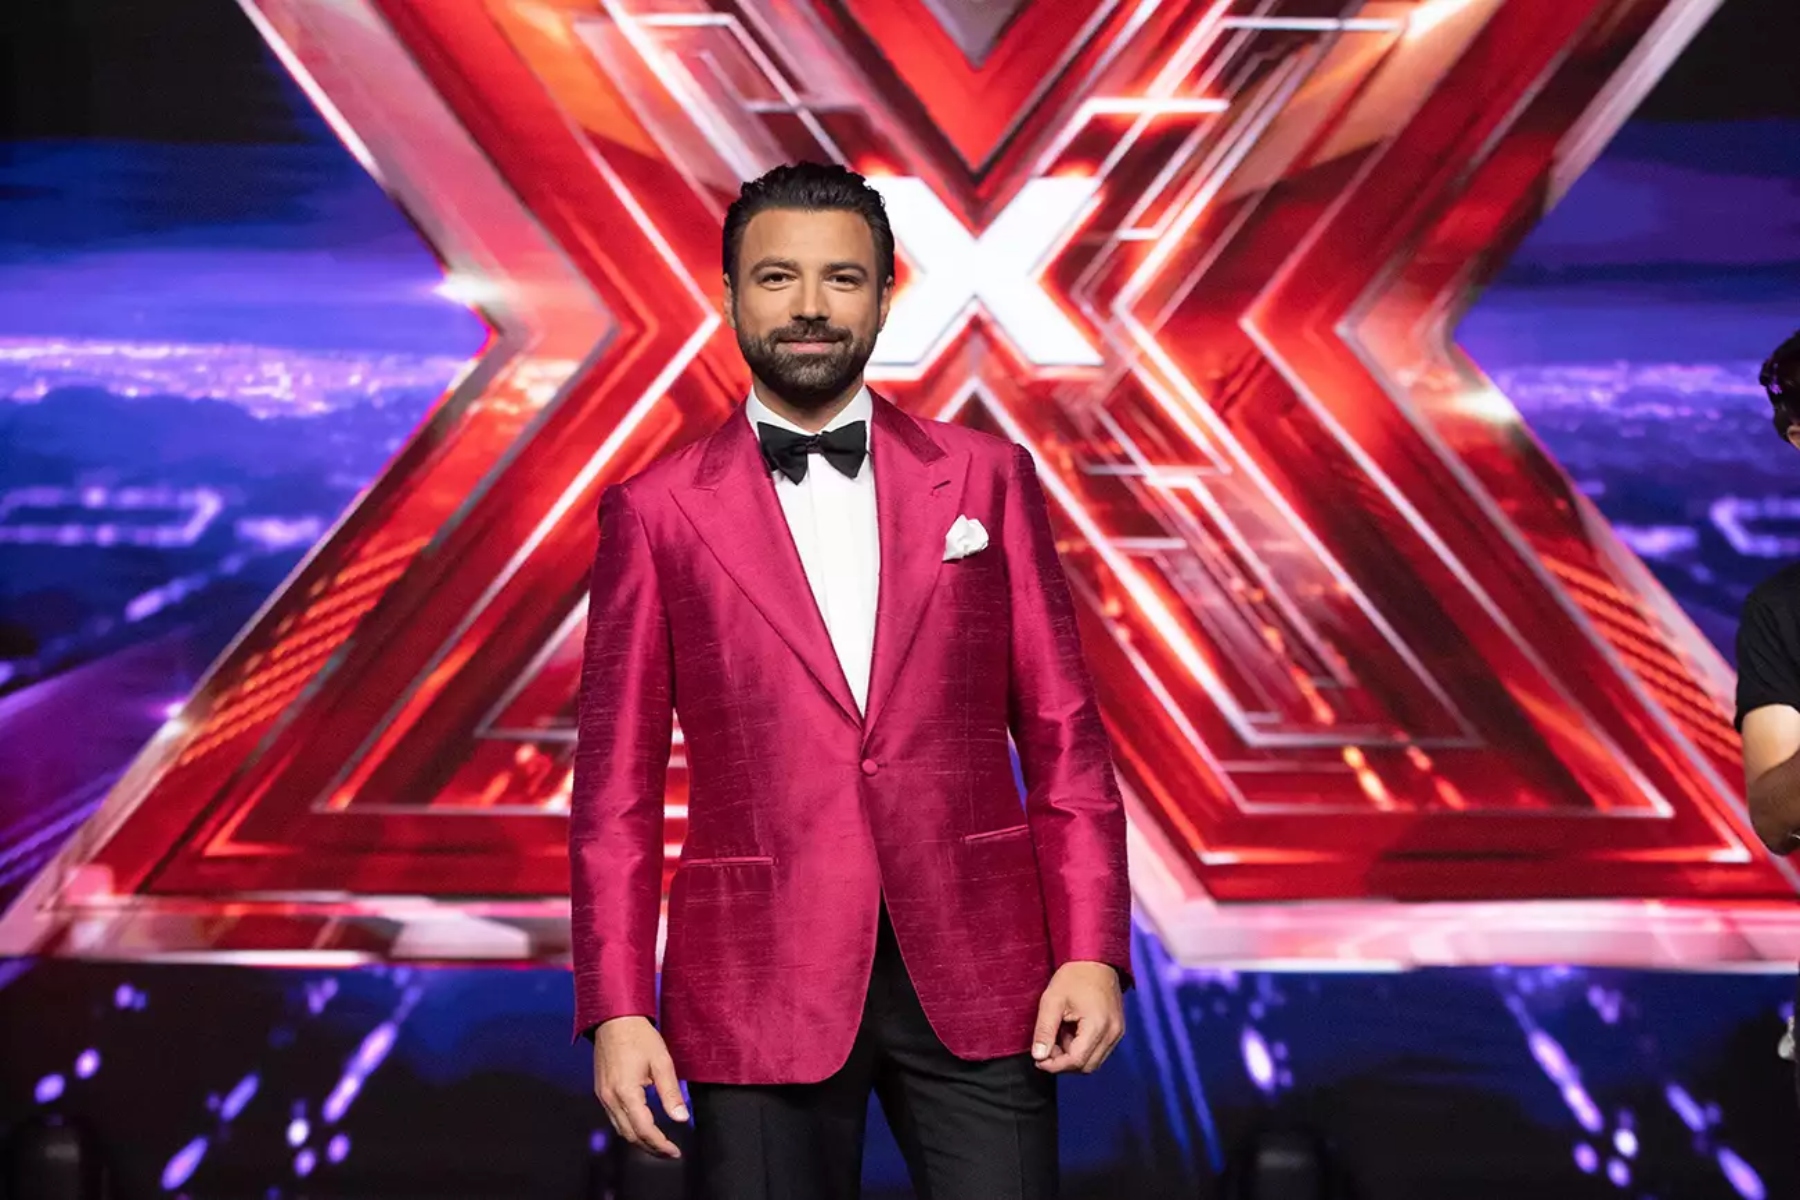 X Factor τελικός: Η αντίστροφη μέτρηση ξεκίνησε για την φαντασμαγορική βραδιά [trailer]